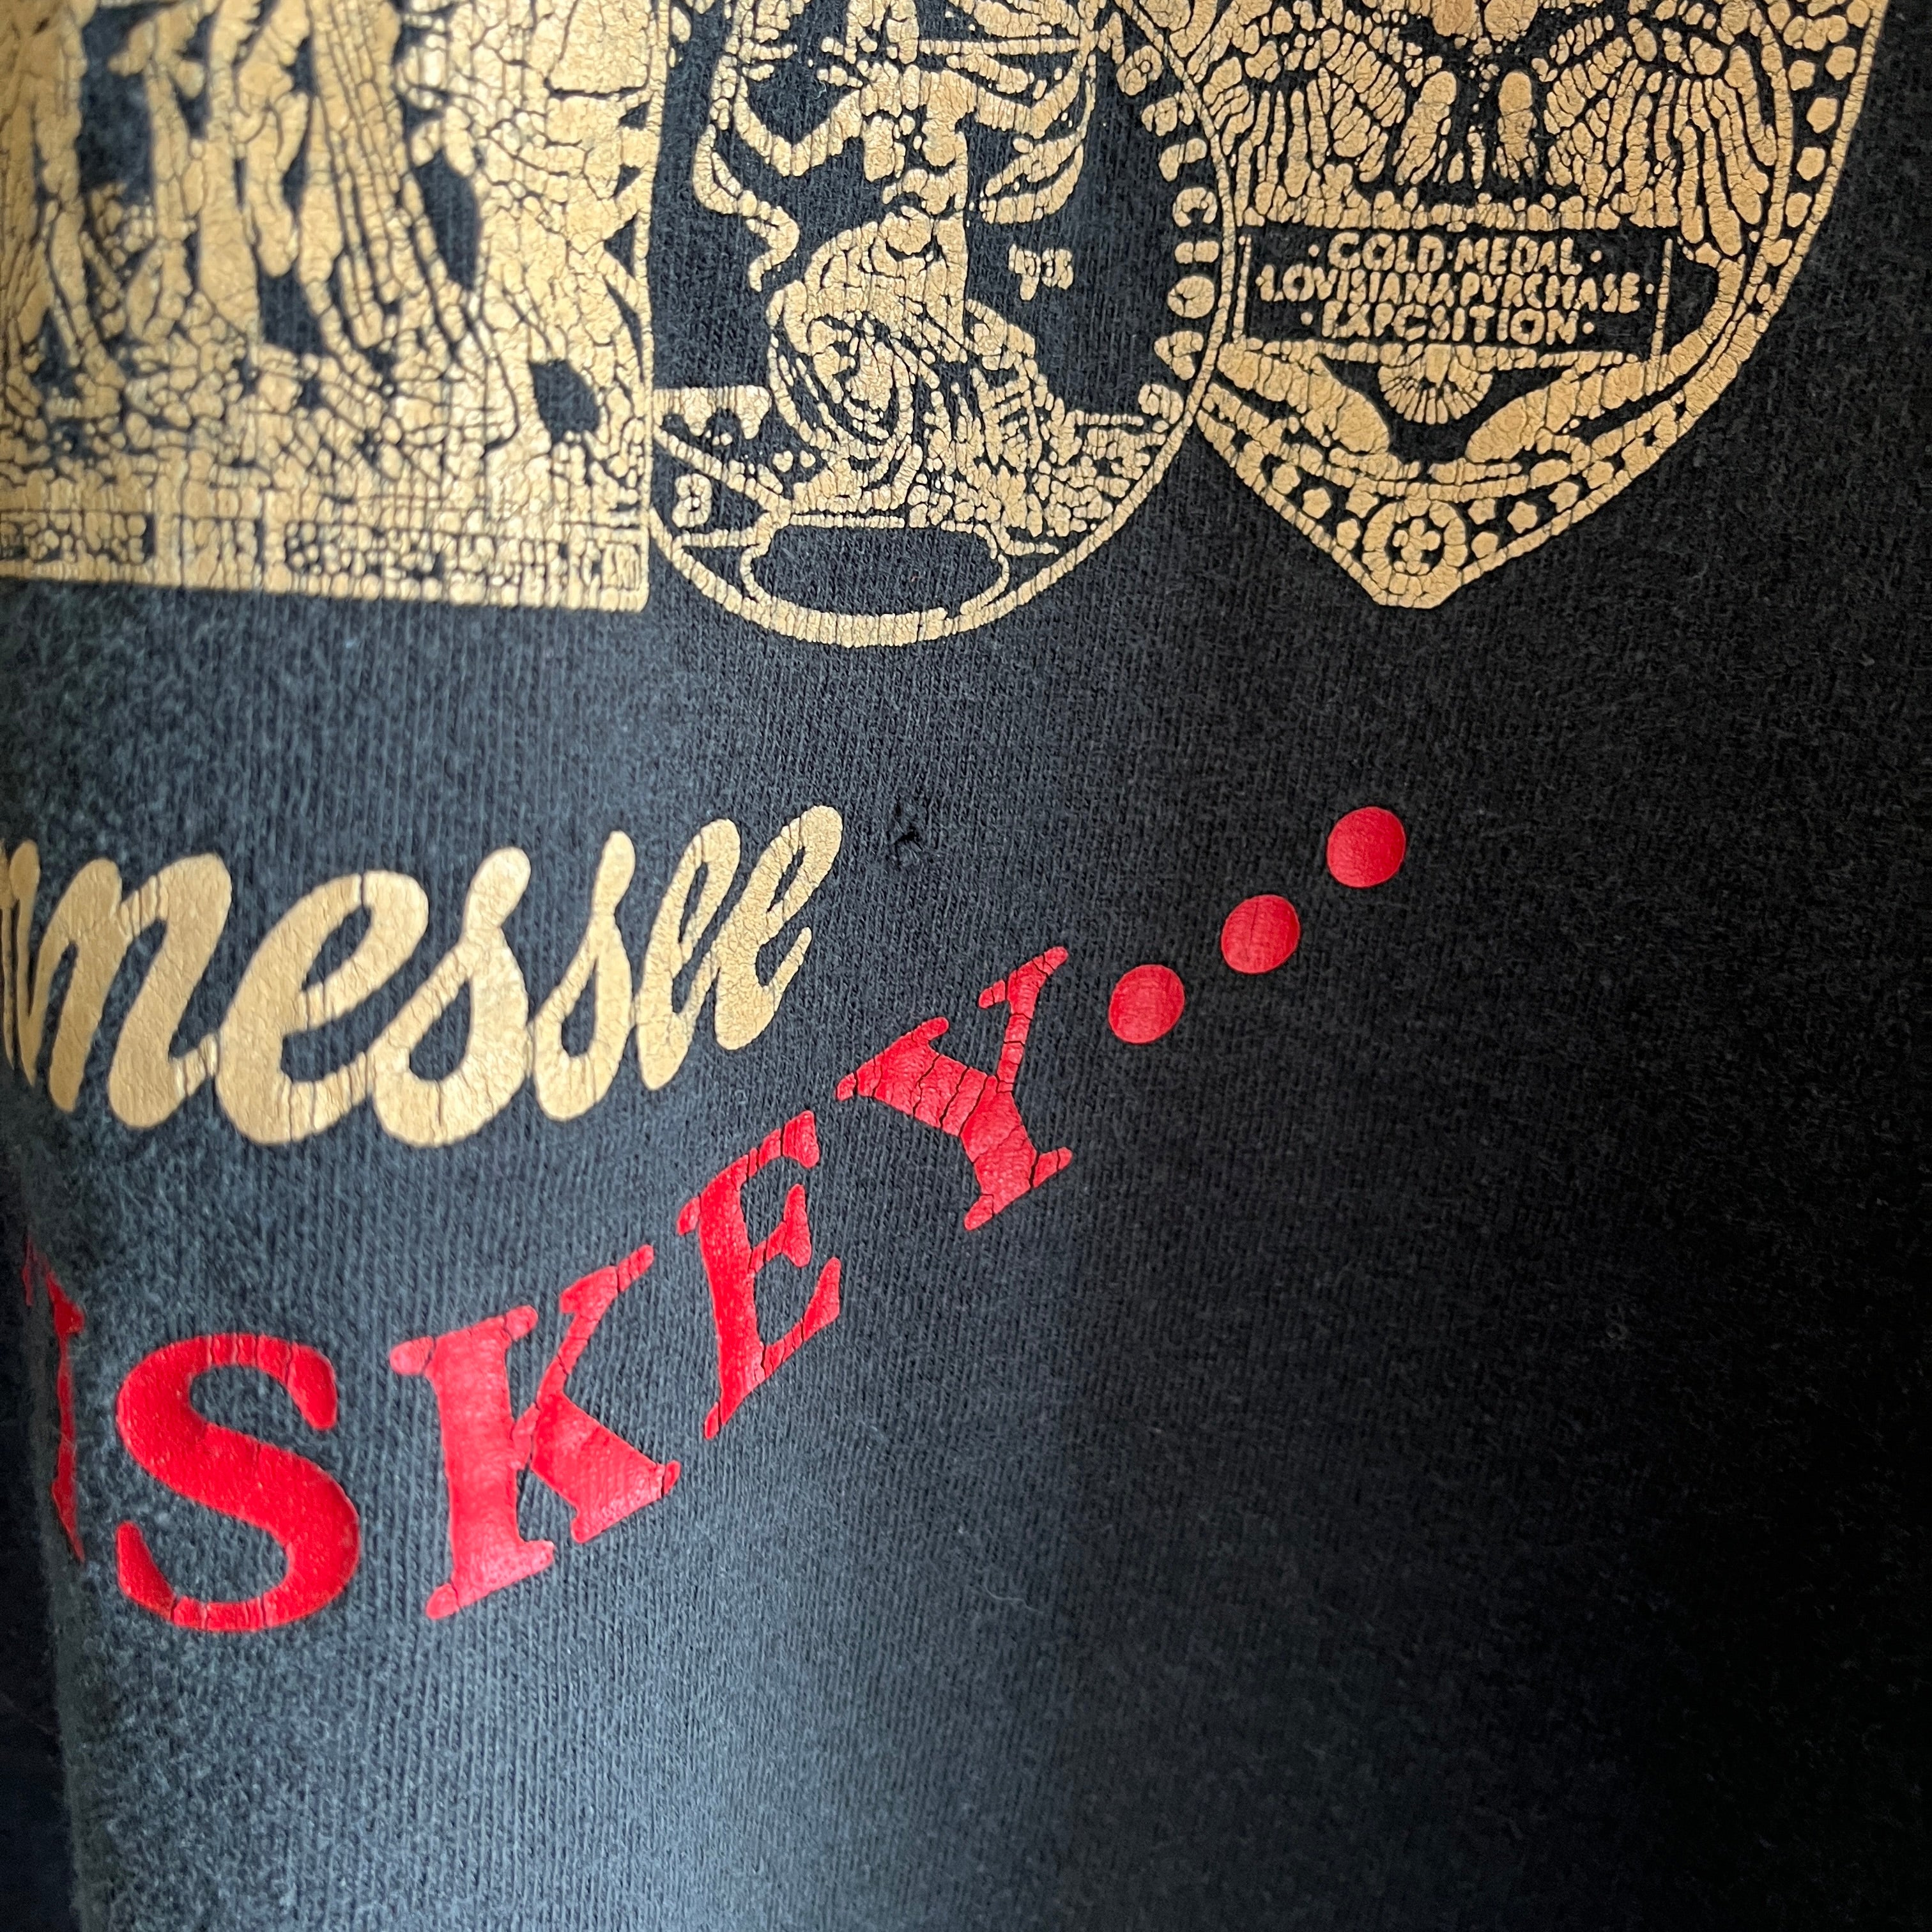 T-shirt surdimensionné Jack Daniels Gold Medal Tennessee Whiskey des années 1990